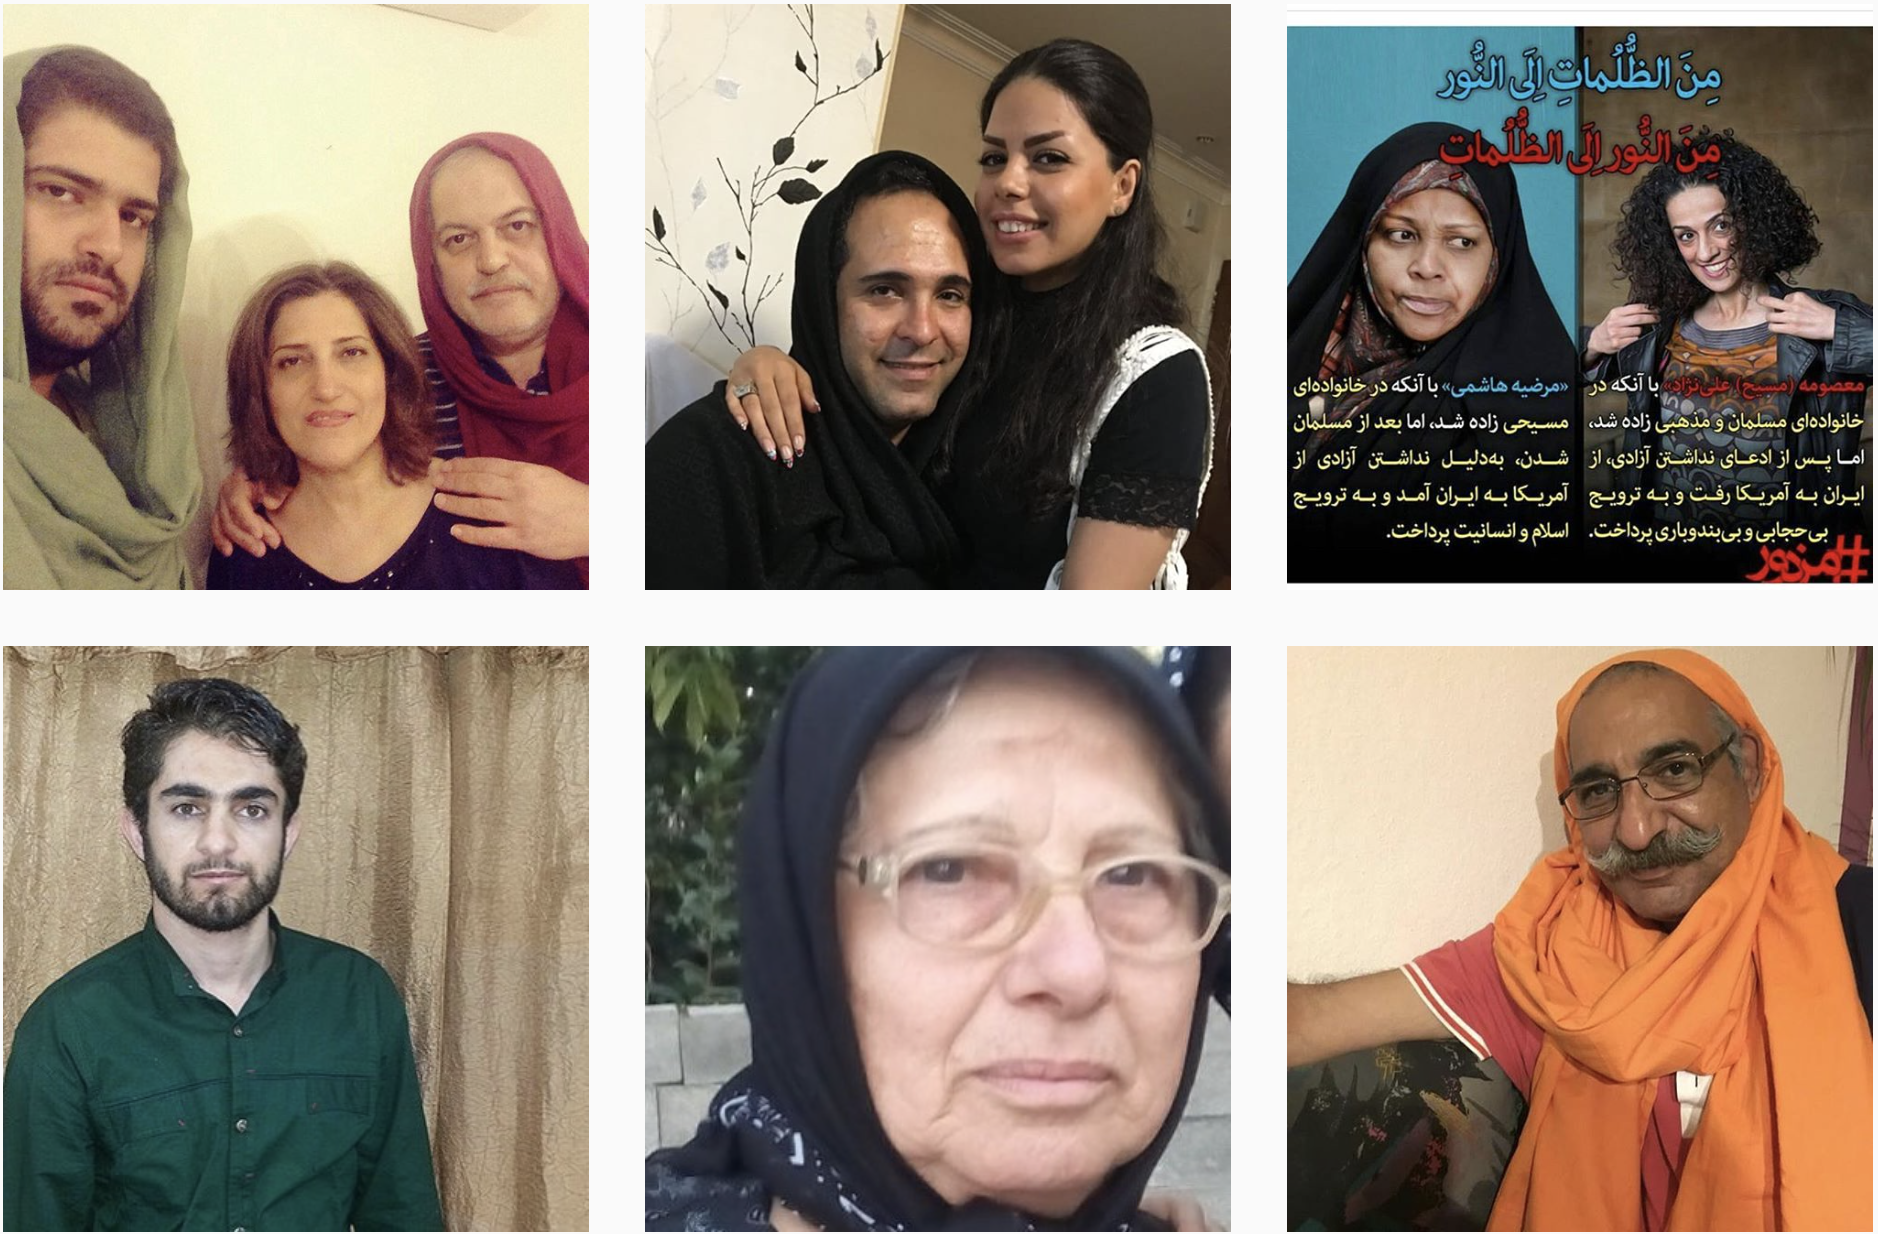 Men Wear Headscarf in Iran in Solidarity With Women